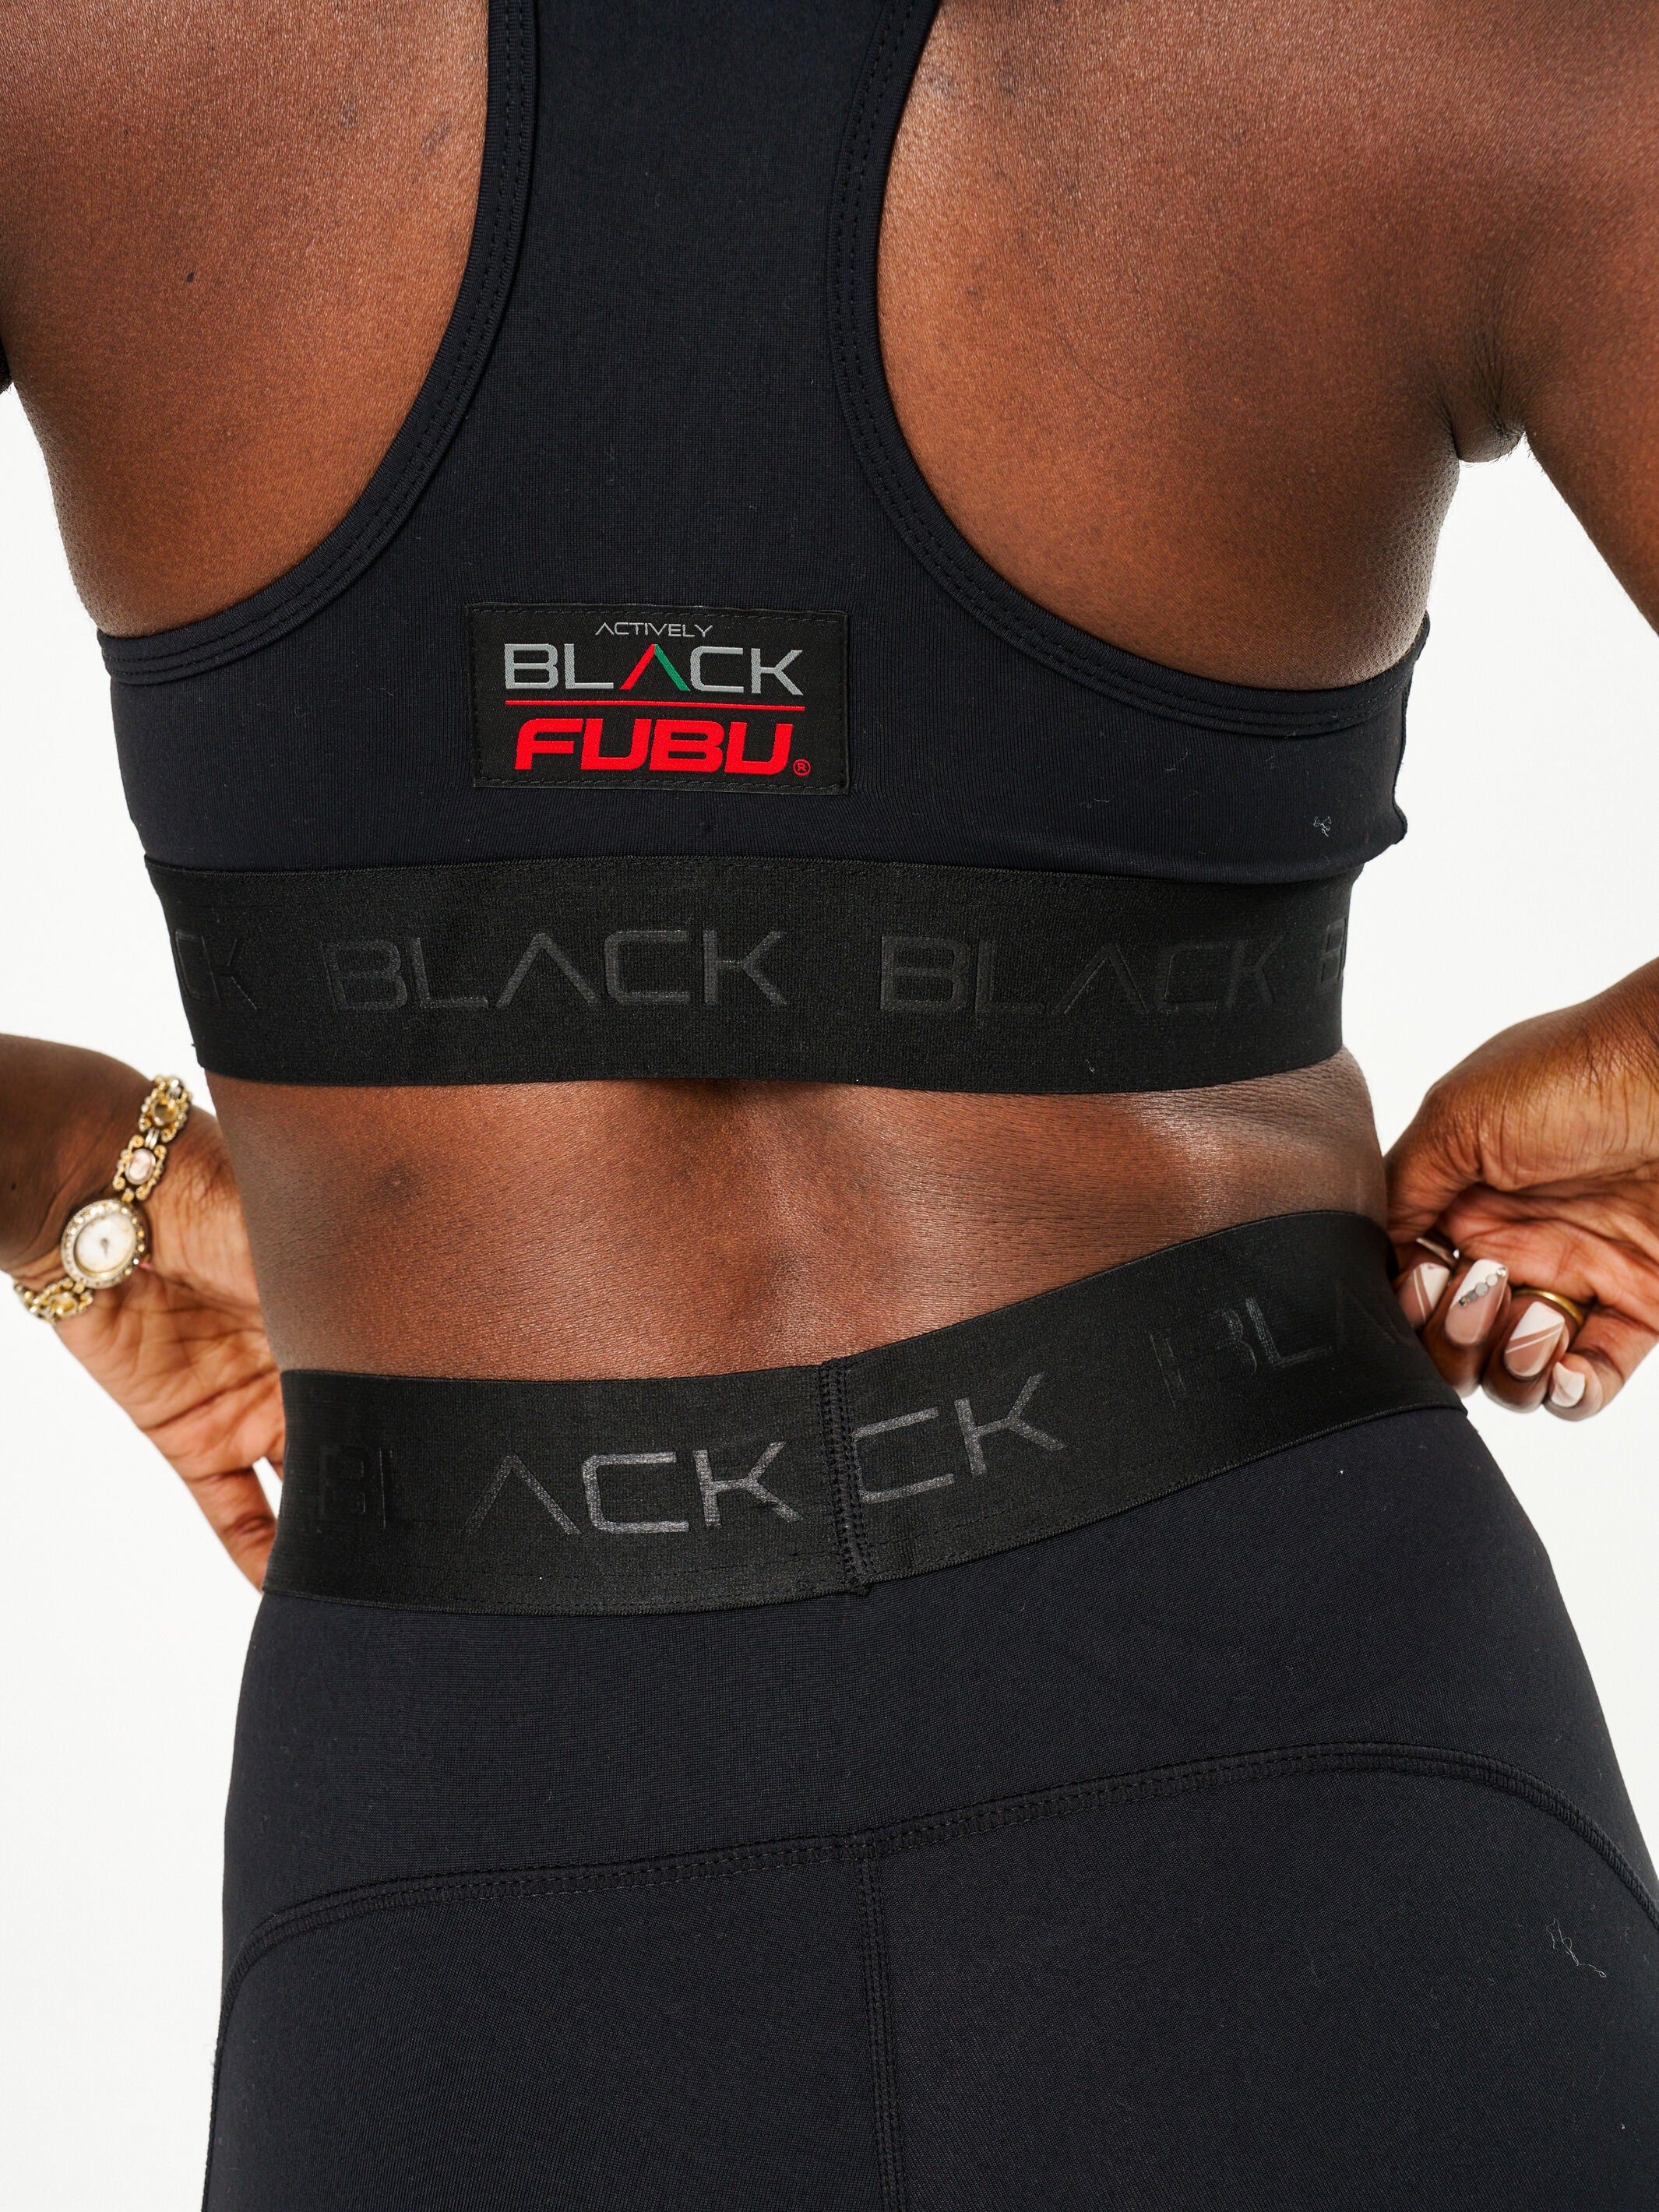 Women's FUBU x Actively Black Sports Bra